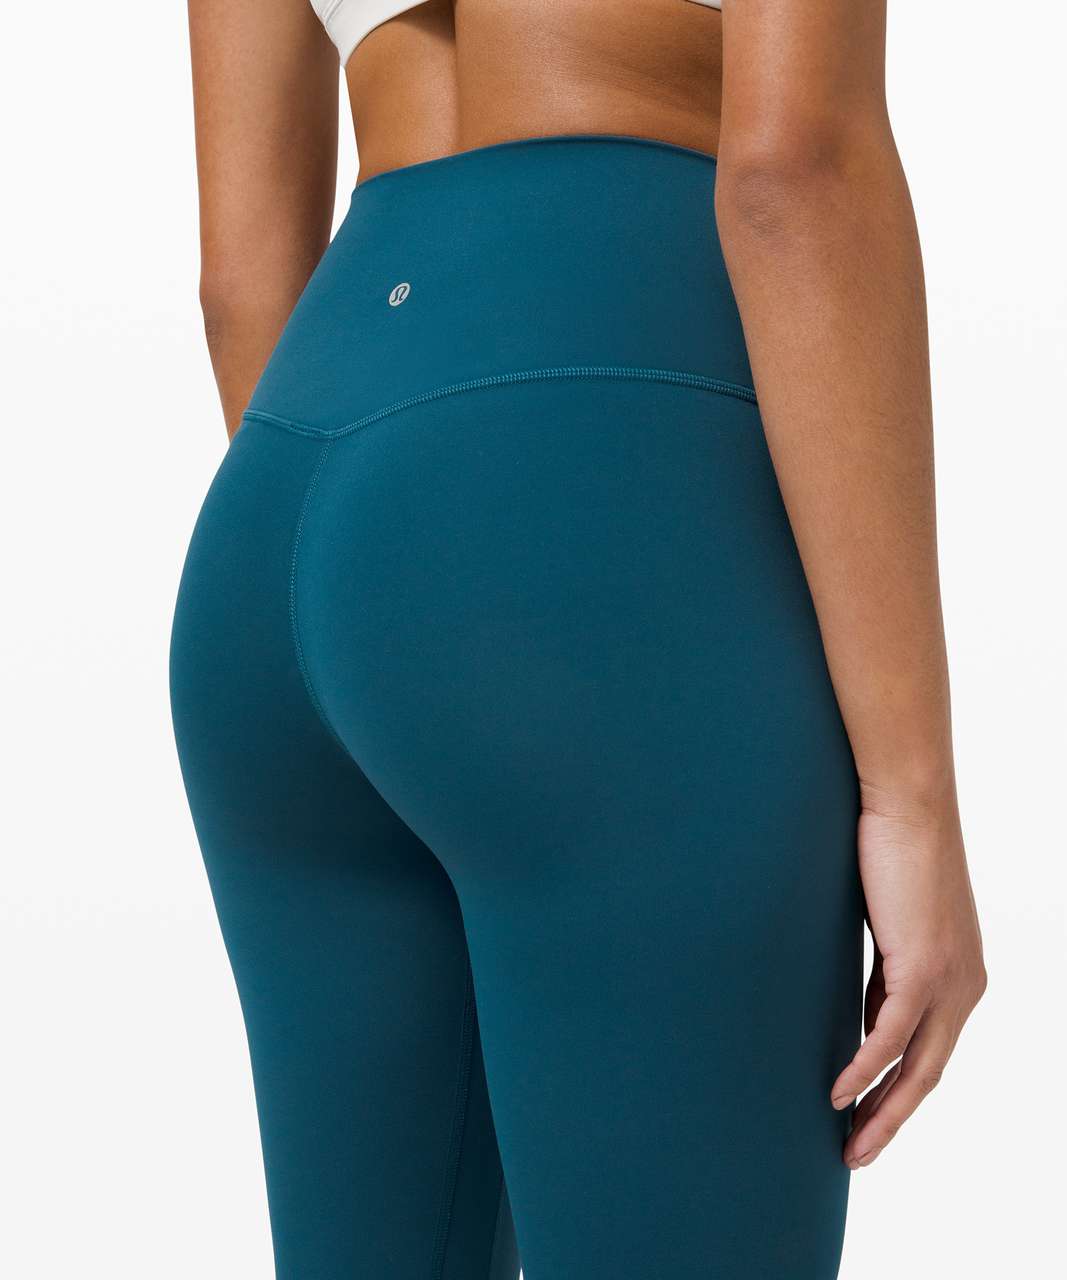 NEW Women Lululemon Align Pant with Pockets 25 Blue Borealis Size 2 